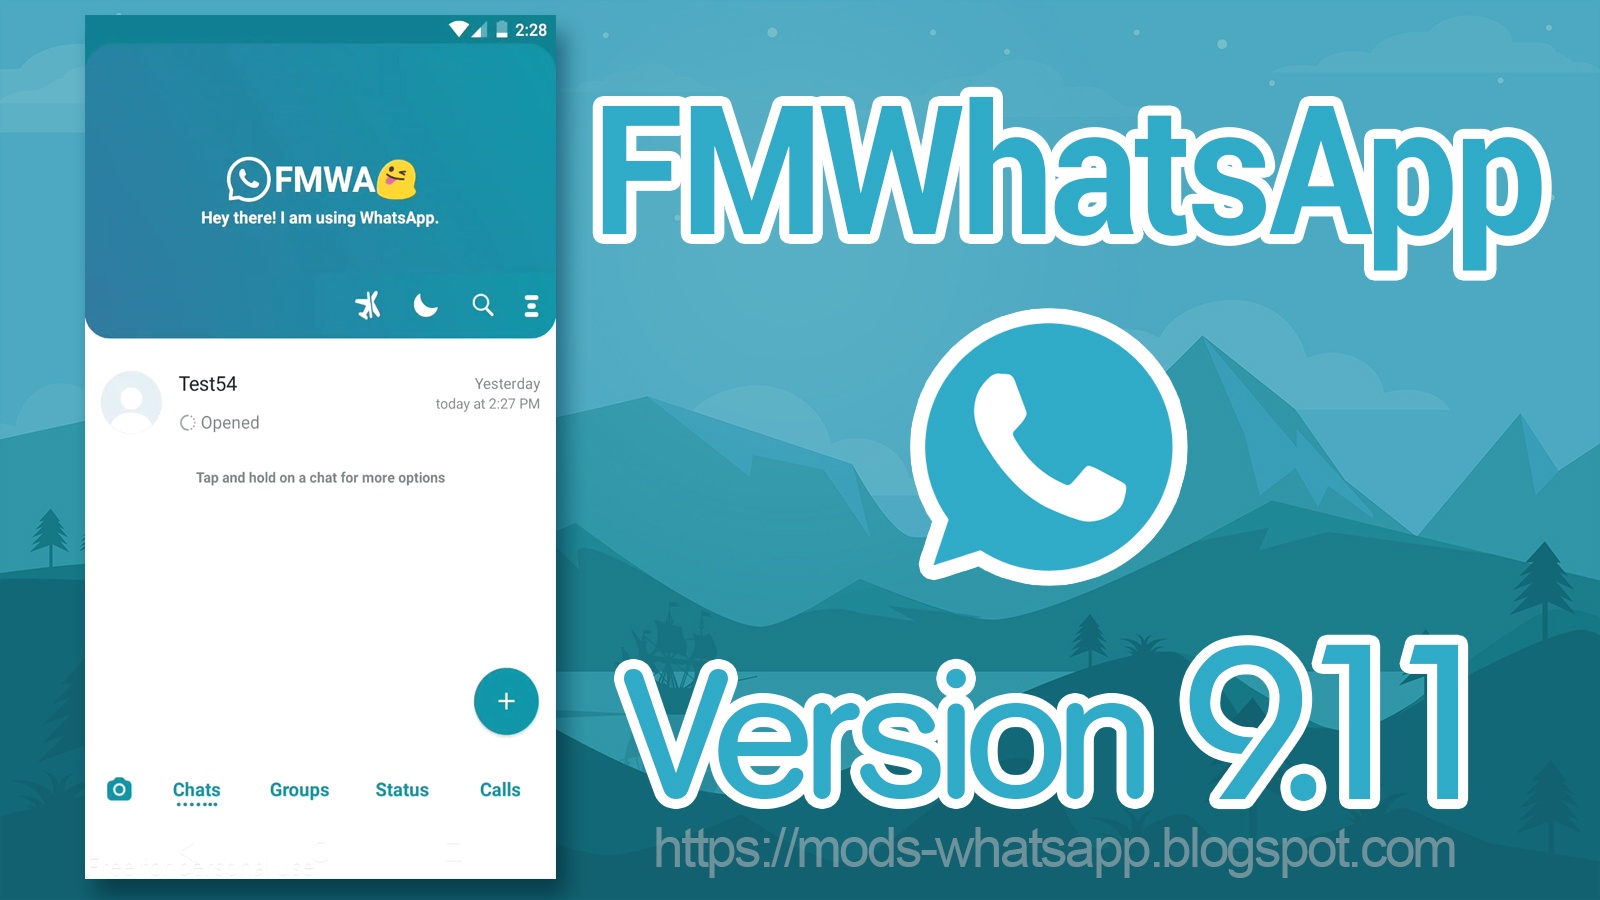 FMWhatsApp v9.11 (Fouad WhatsApp) APK